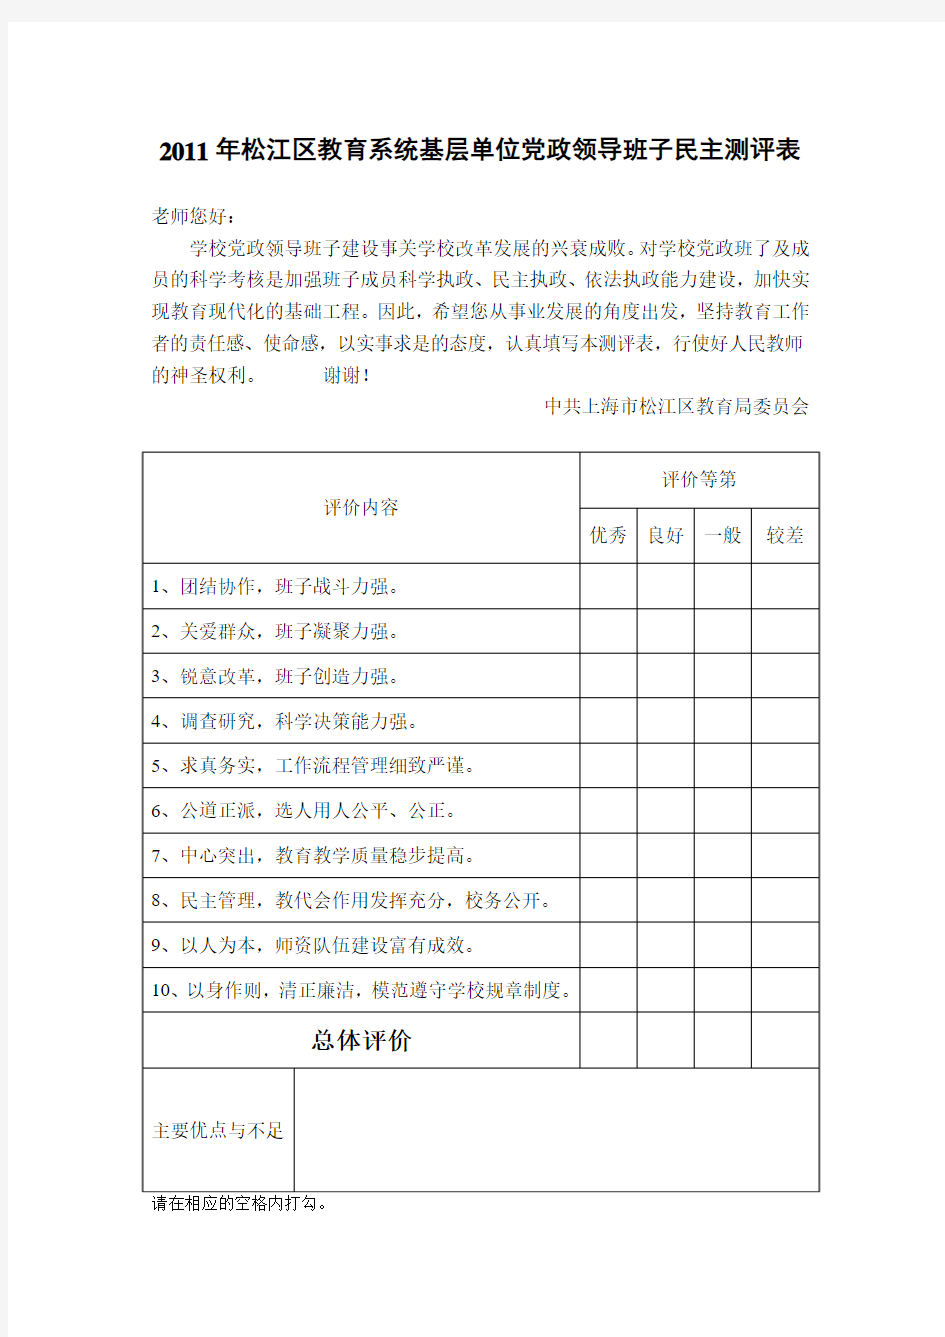 松江区教育系统学校党政领导班子及成员民主测评表